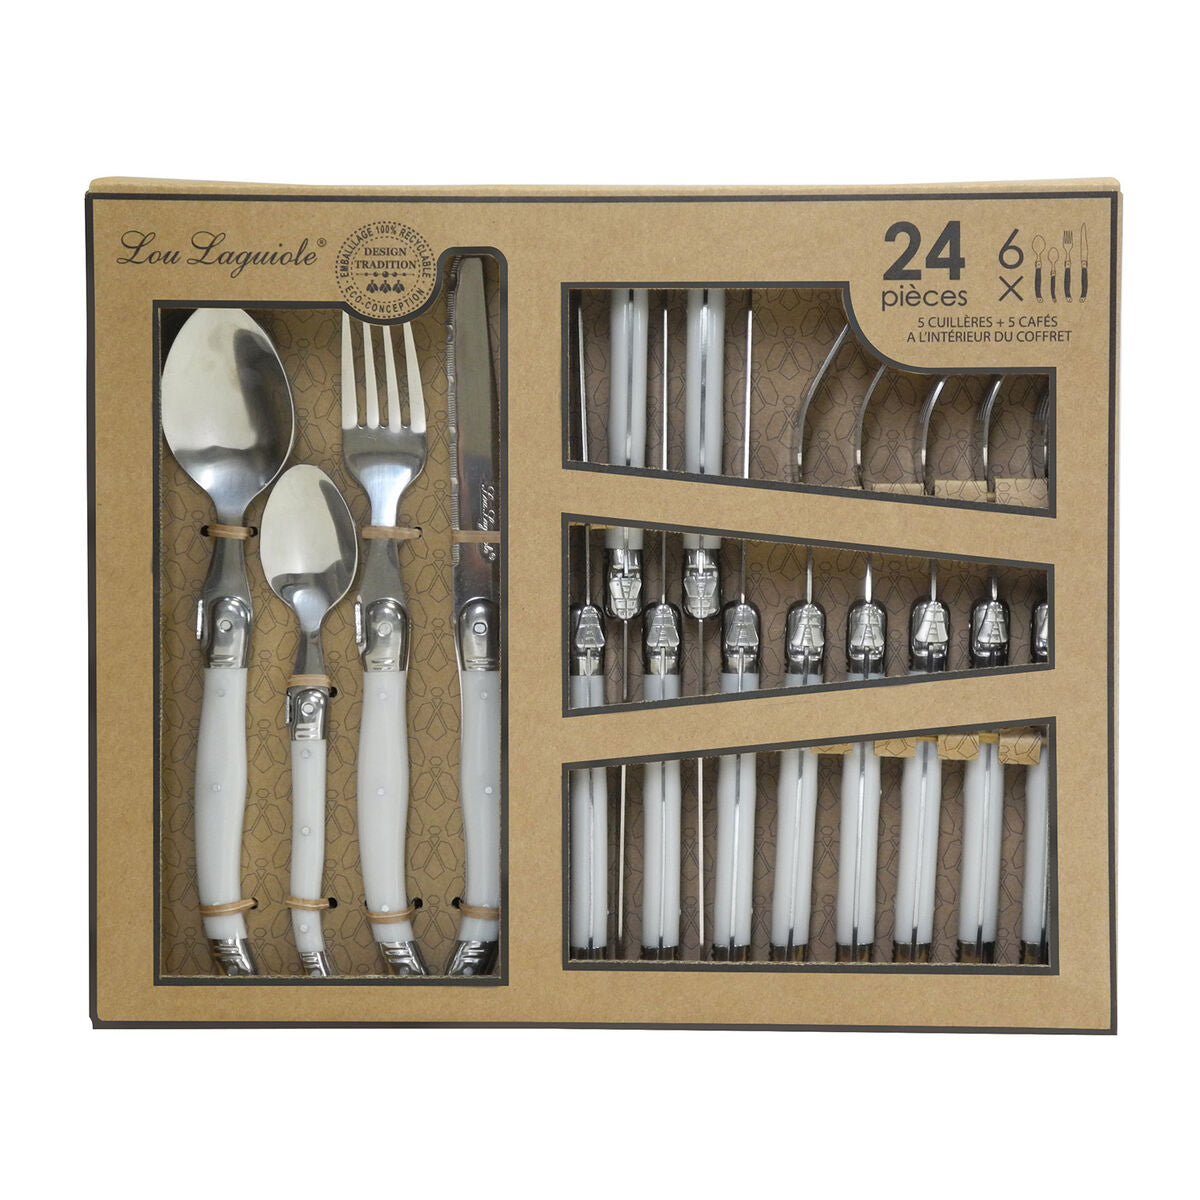 Cutlery Set Lou Laguiole Rustic 24 Pieces Bicoloured Metal